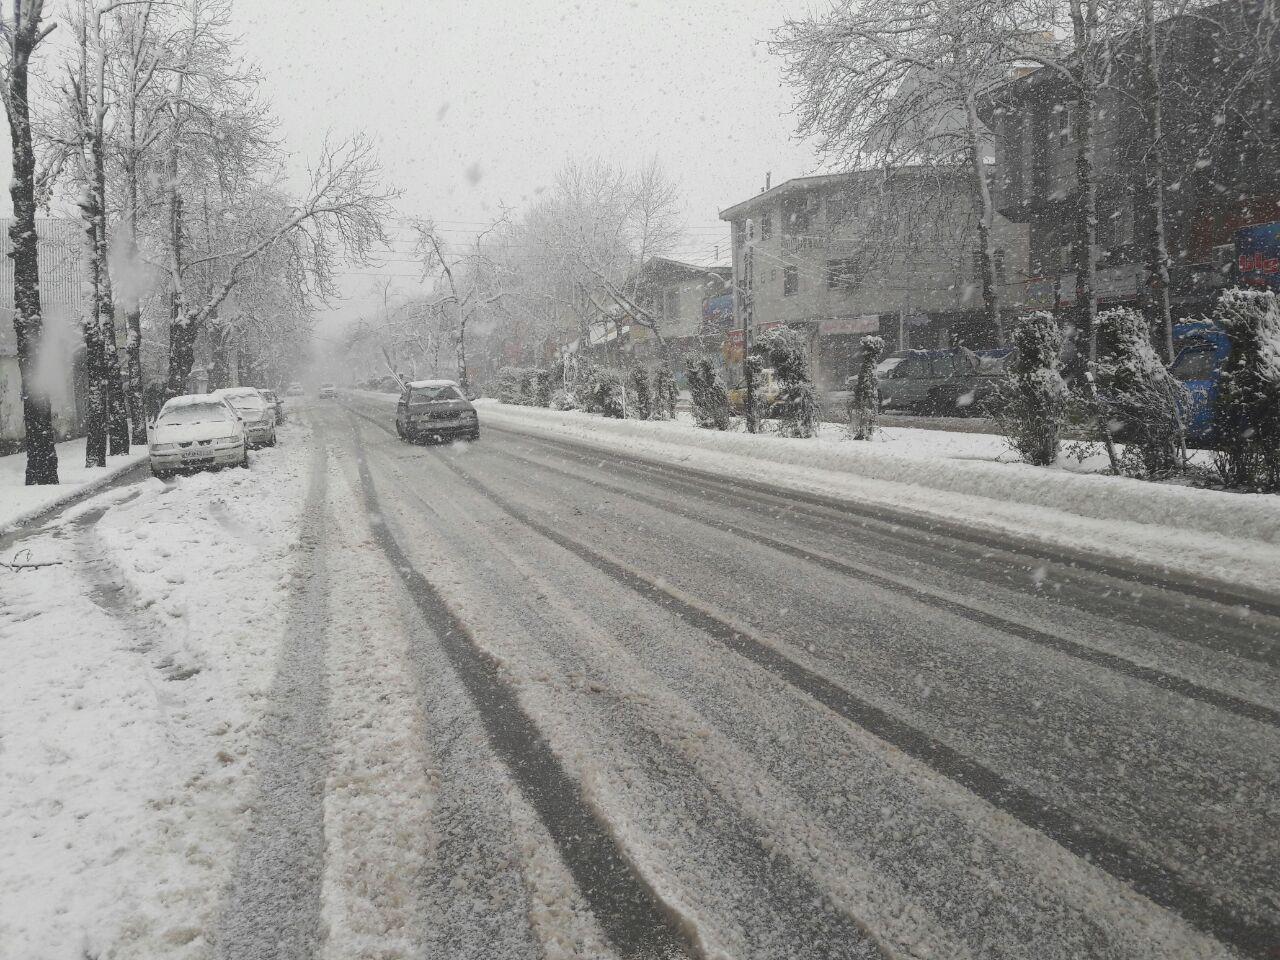 تصاویر اولیه از بارش برف در شهر رشت